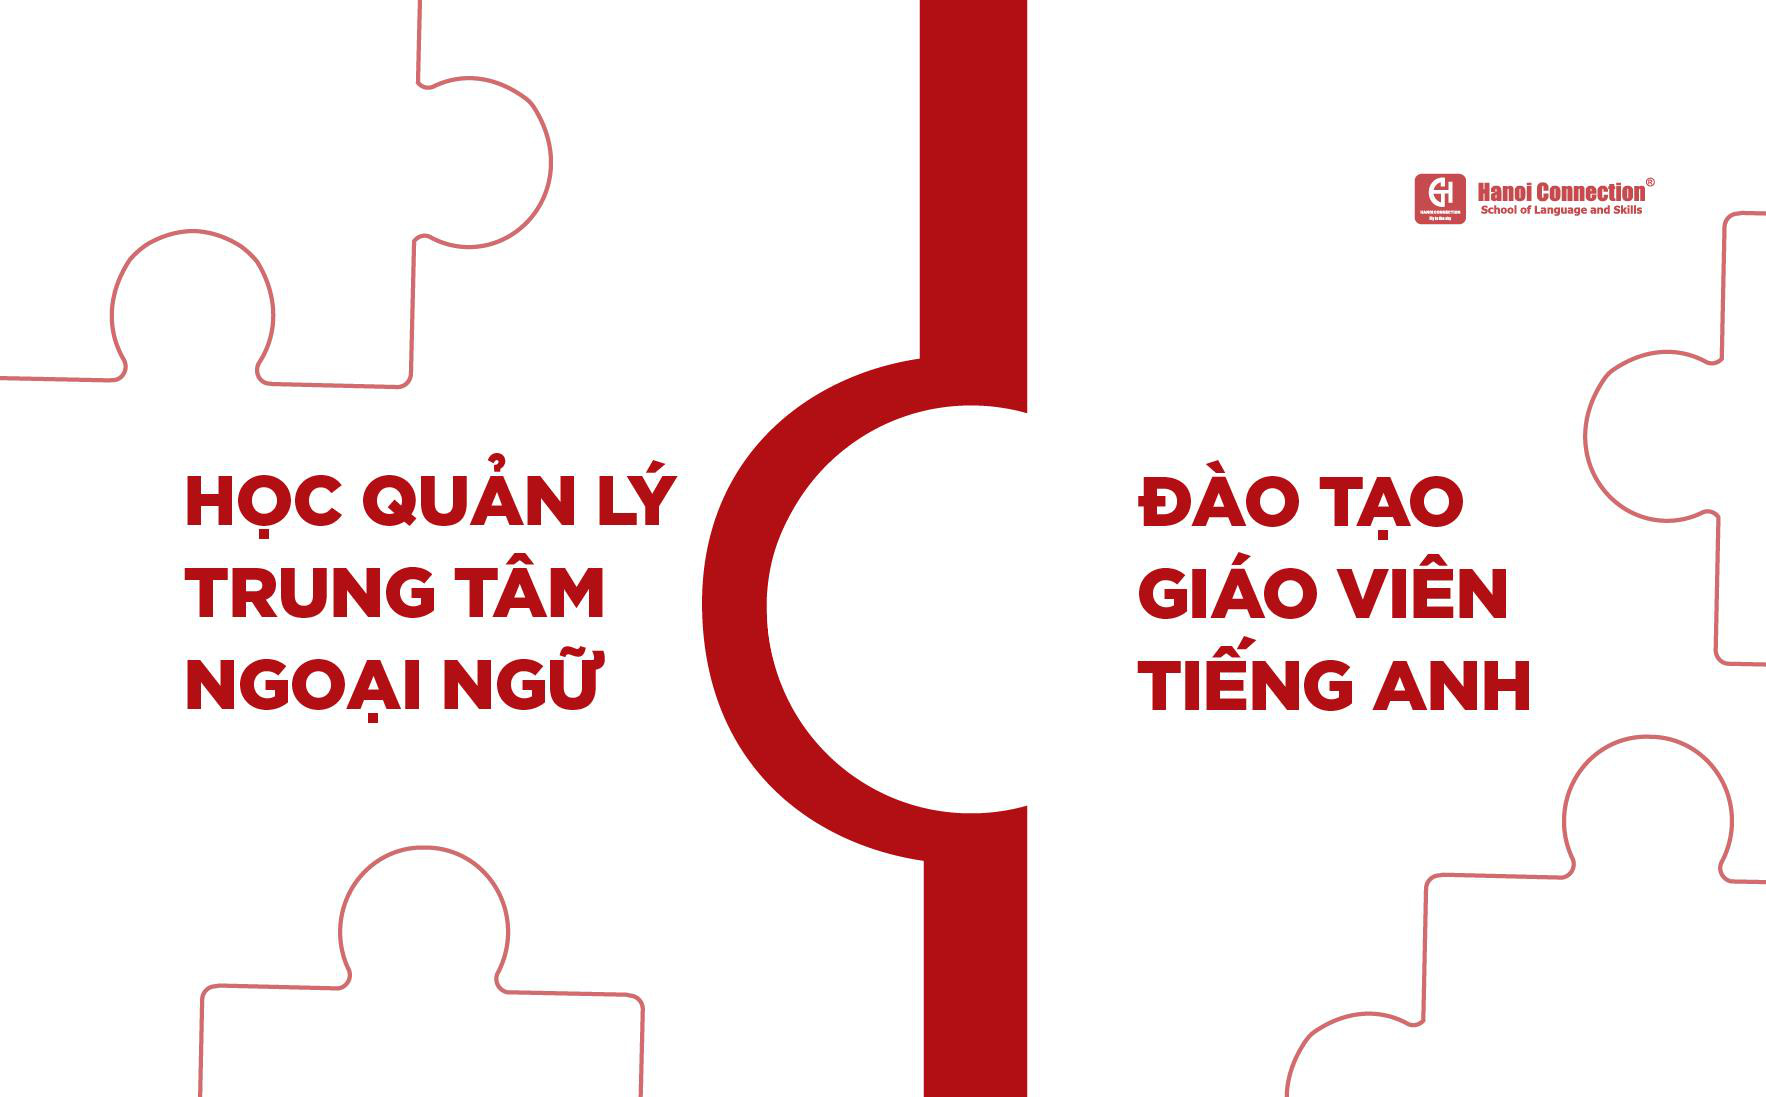 Làm gì trong và sau đại dịch với quan điểm CEO Hanoi Connection - Ảnh 1.